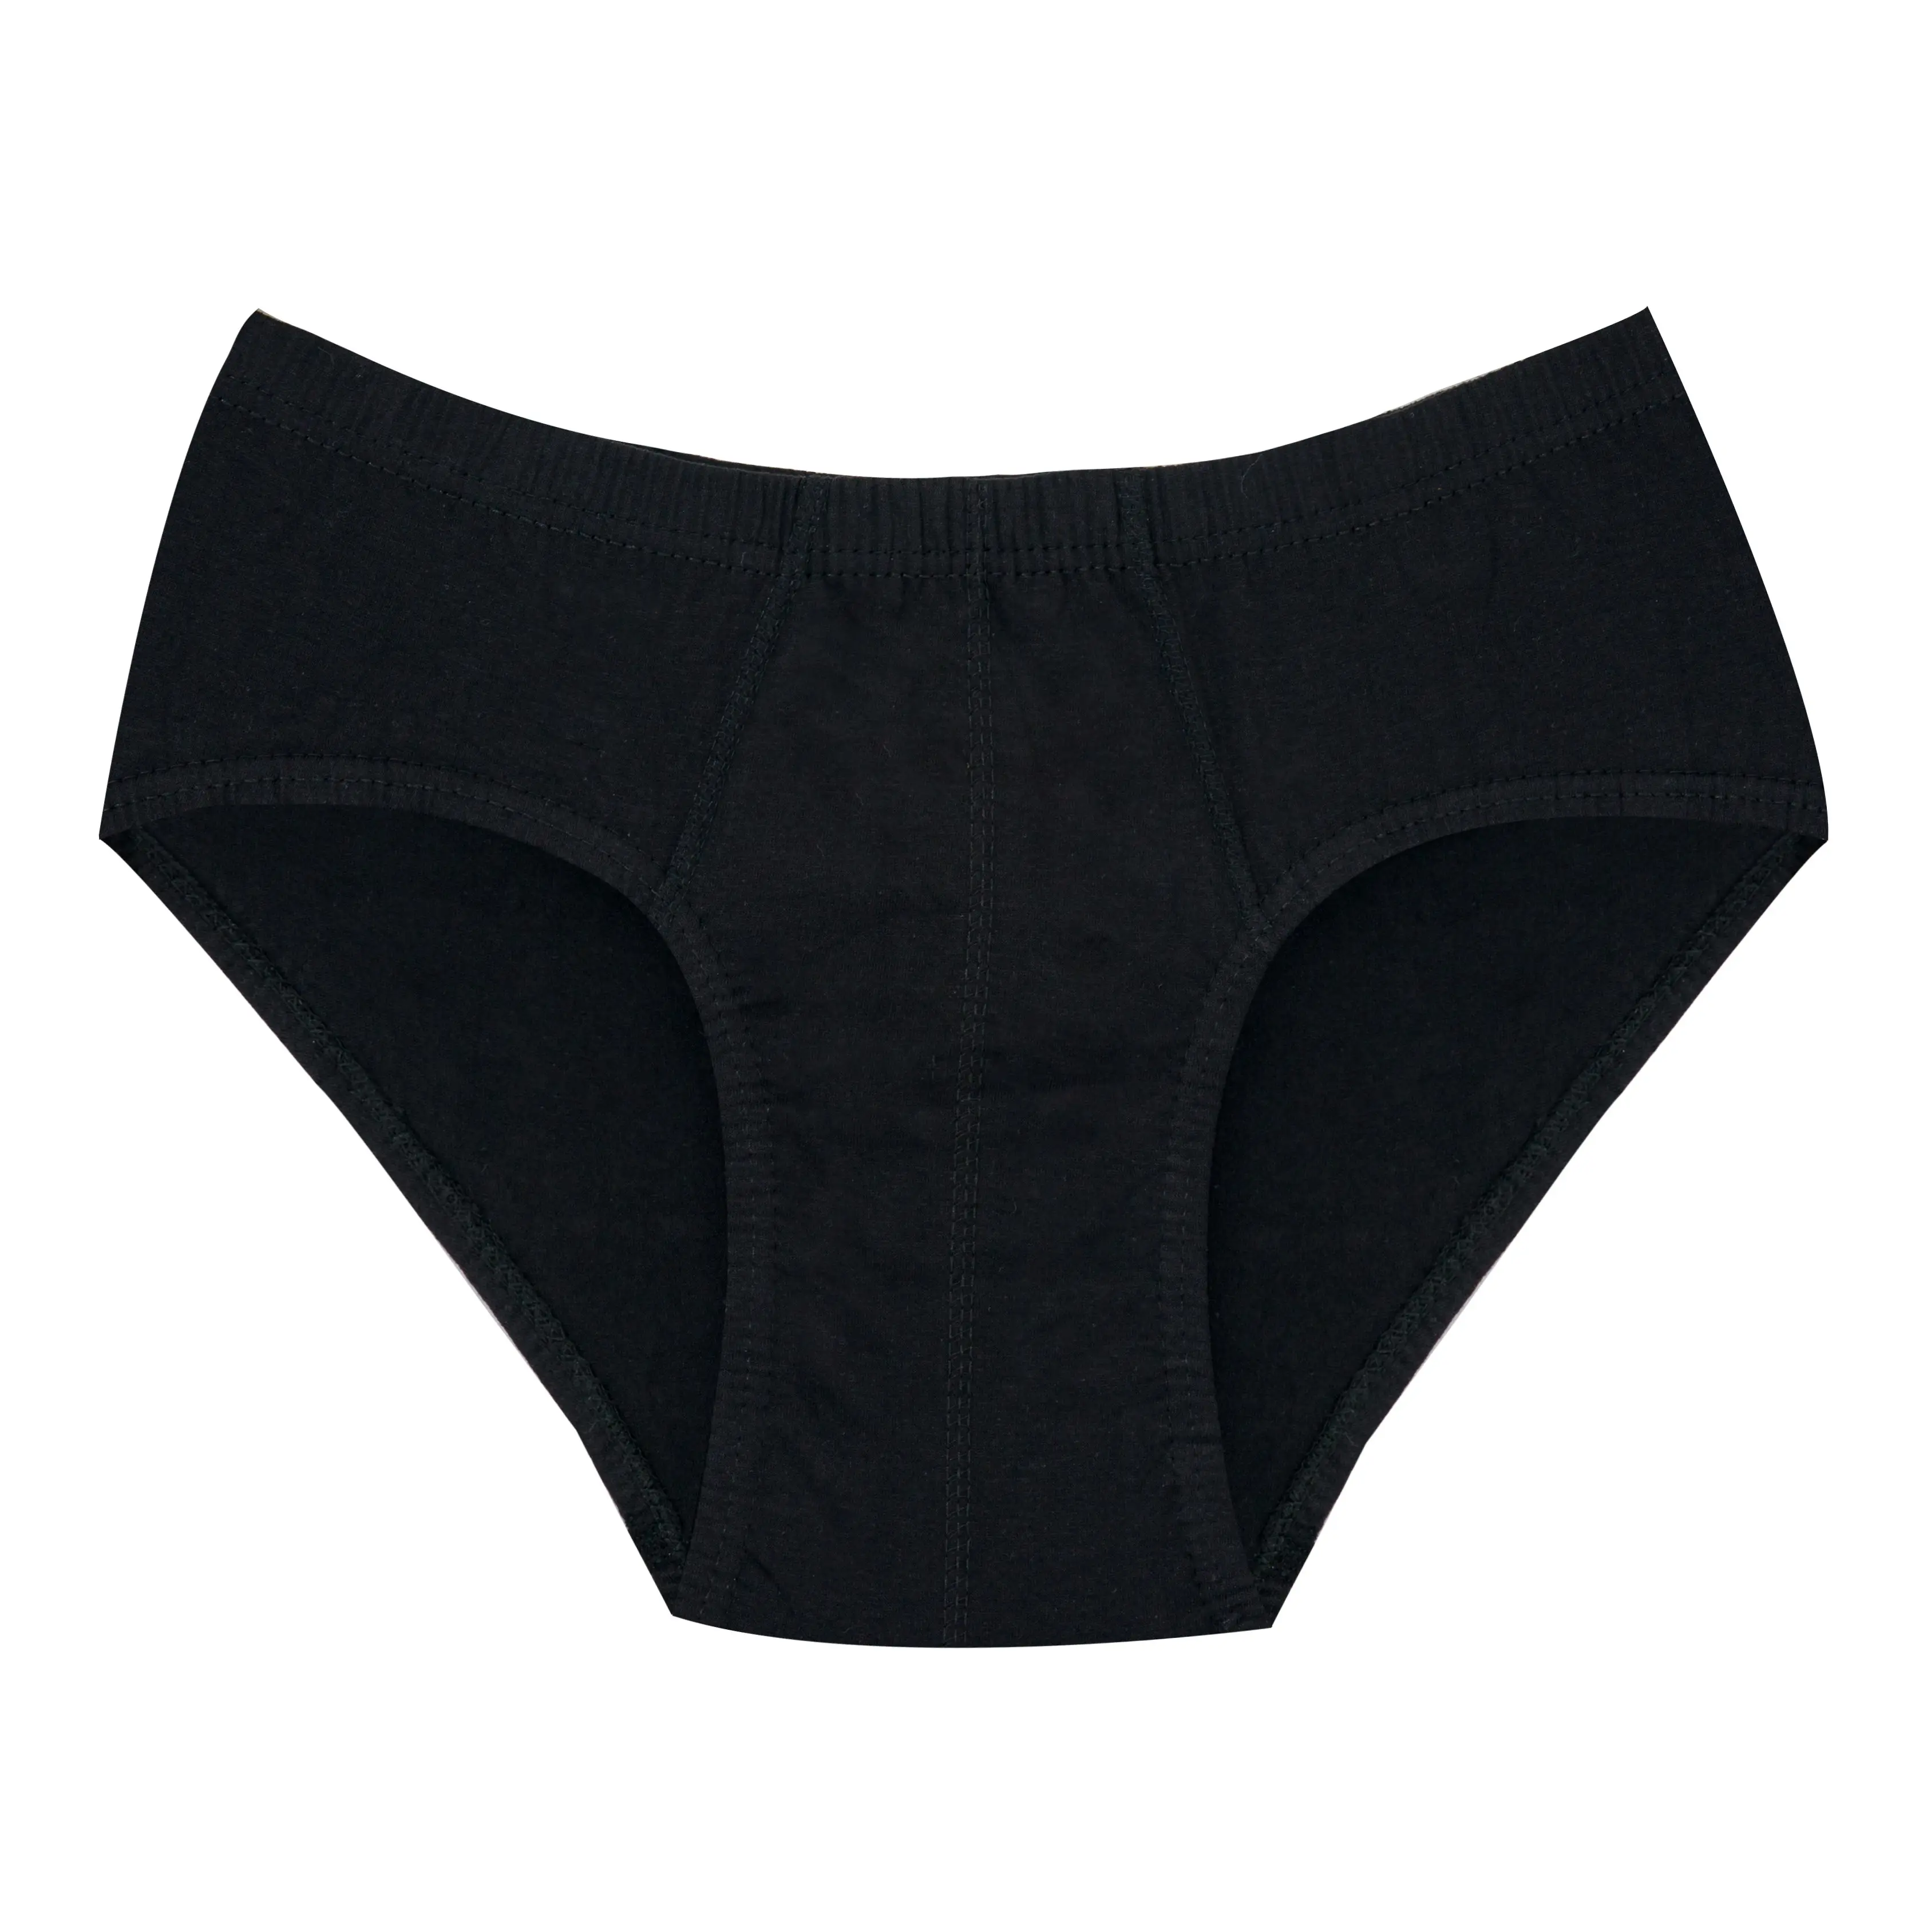 PMY Men Brief Underwear 145 Gsm Knitted Fabric 100% Cotton Underwear for Men Wholesale OEM